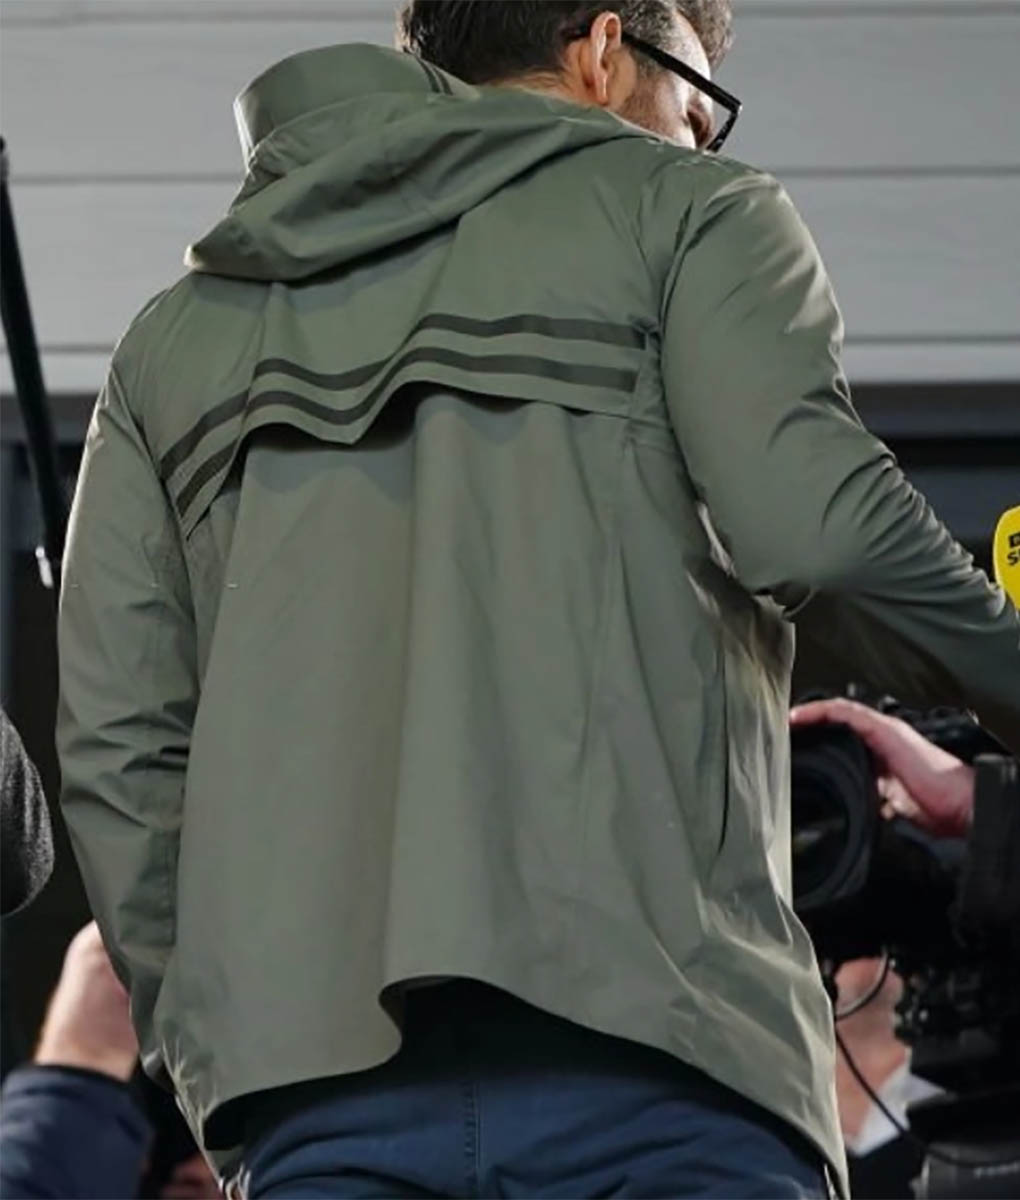 Ryan Reynolds Wrexham Jacket